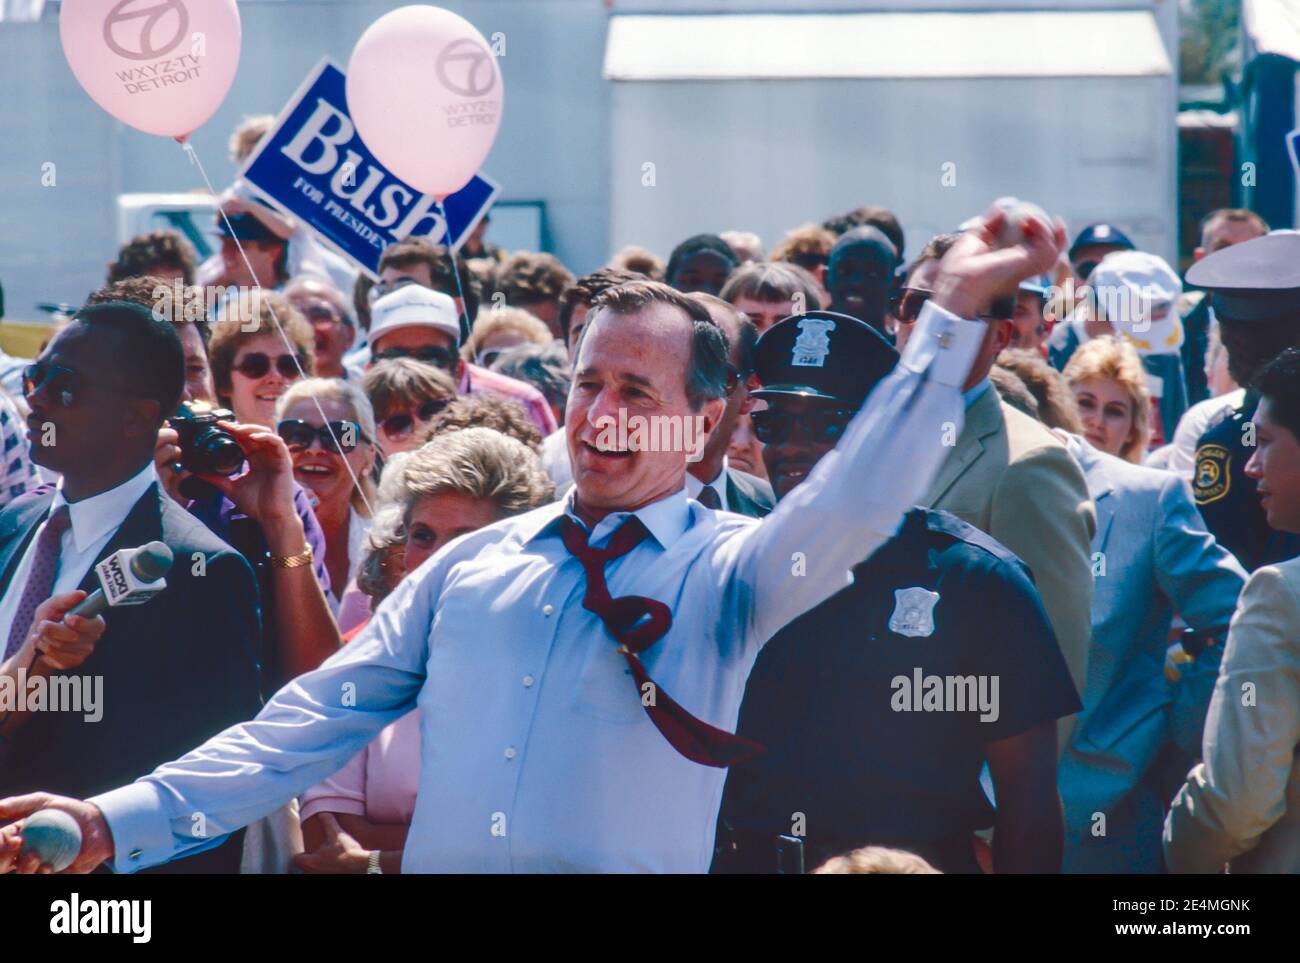 Detroit, Michigan - George H. W. Bush visita la Feria del Estado de Michigan mientras hace campaña por el presidente. Él está lanzando bolas para tratar de golpear a un payaso en un tanque de agua. Foto de stock